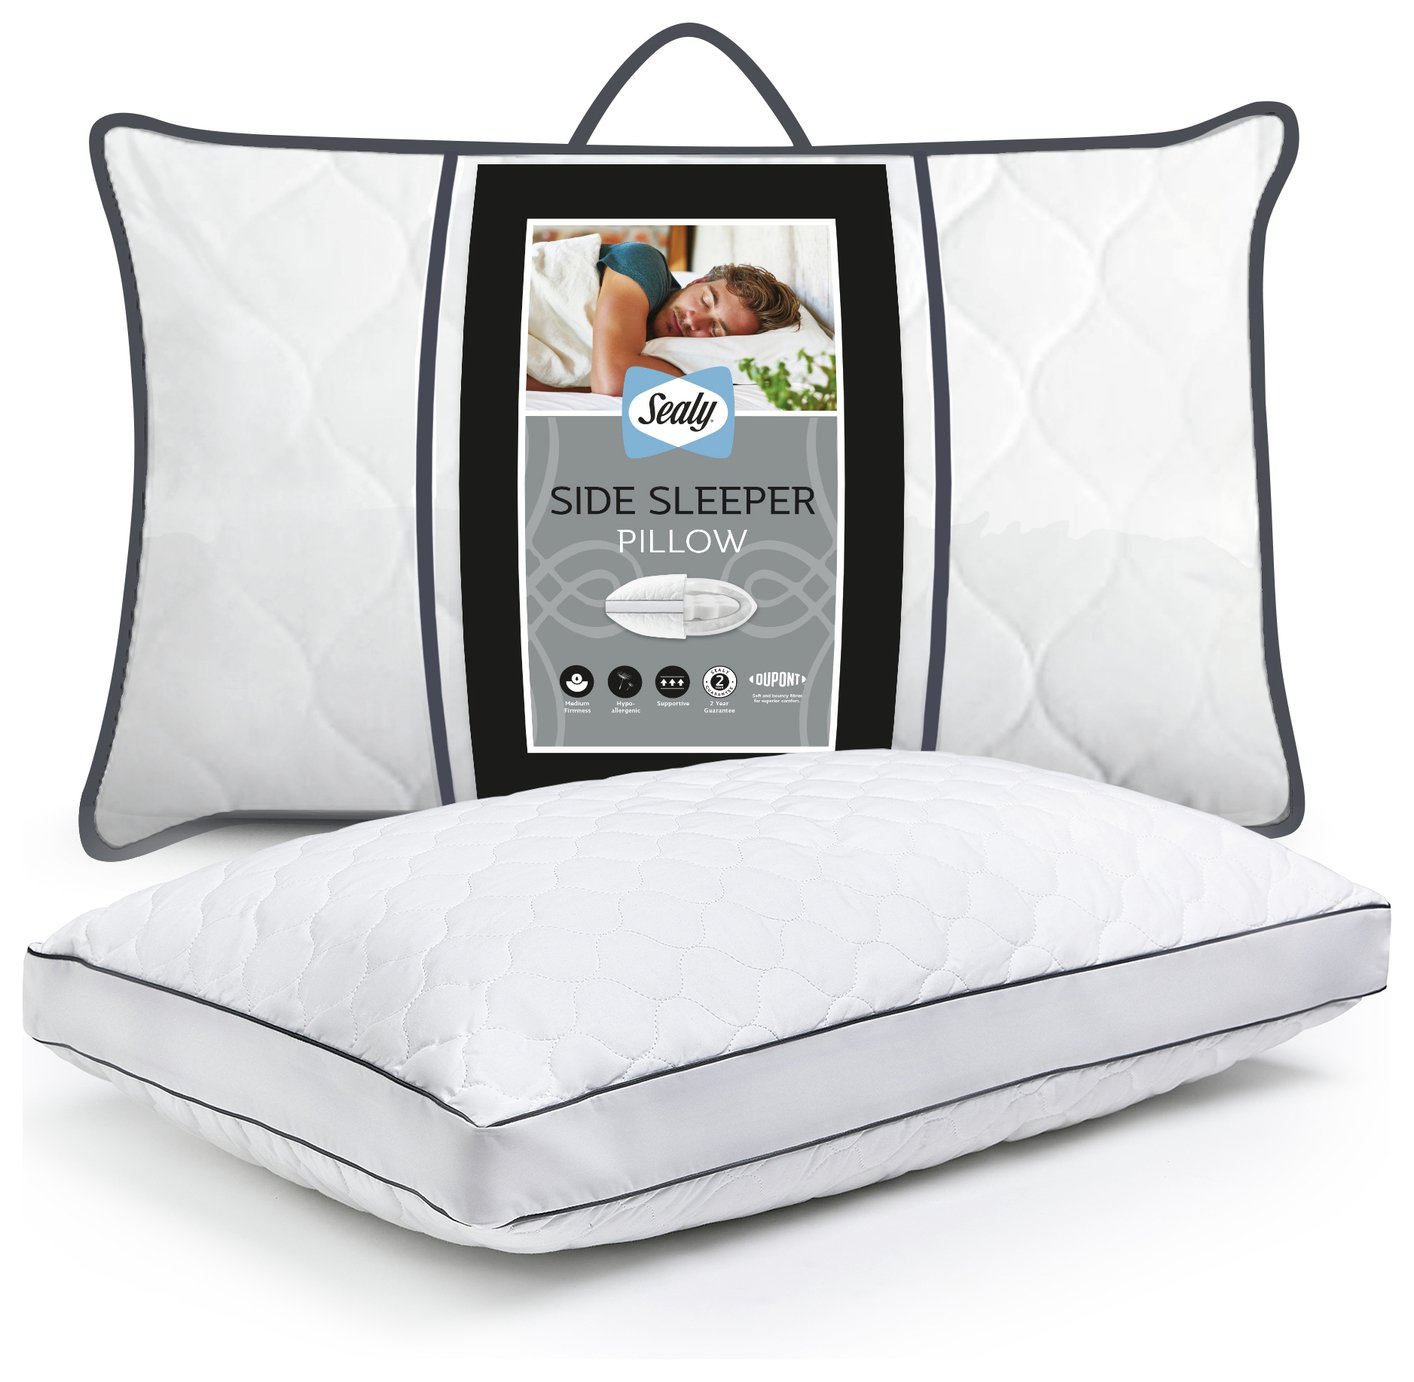 Sealy Side Sleeper Medium Firm Pillow